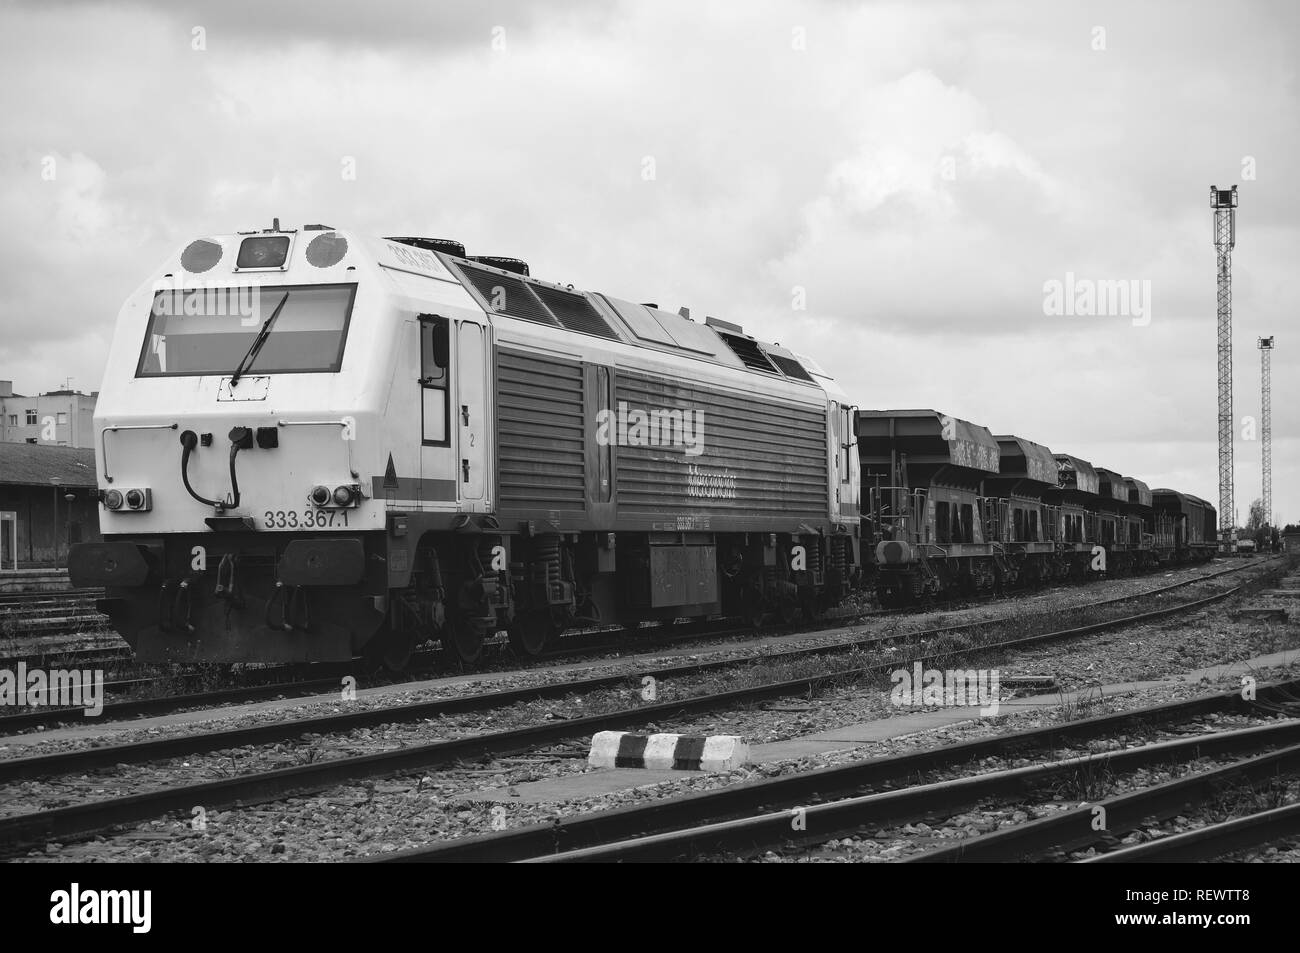 Schöne alte spanische Zug am Bahnhof geparkt. Die grauskala Foto zeigt eine starke Lokomotive mit Waggons beschädigt. Estremadura. Stockfoto